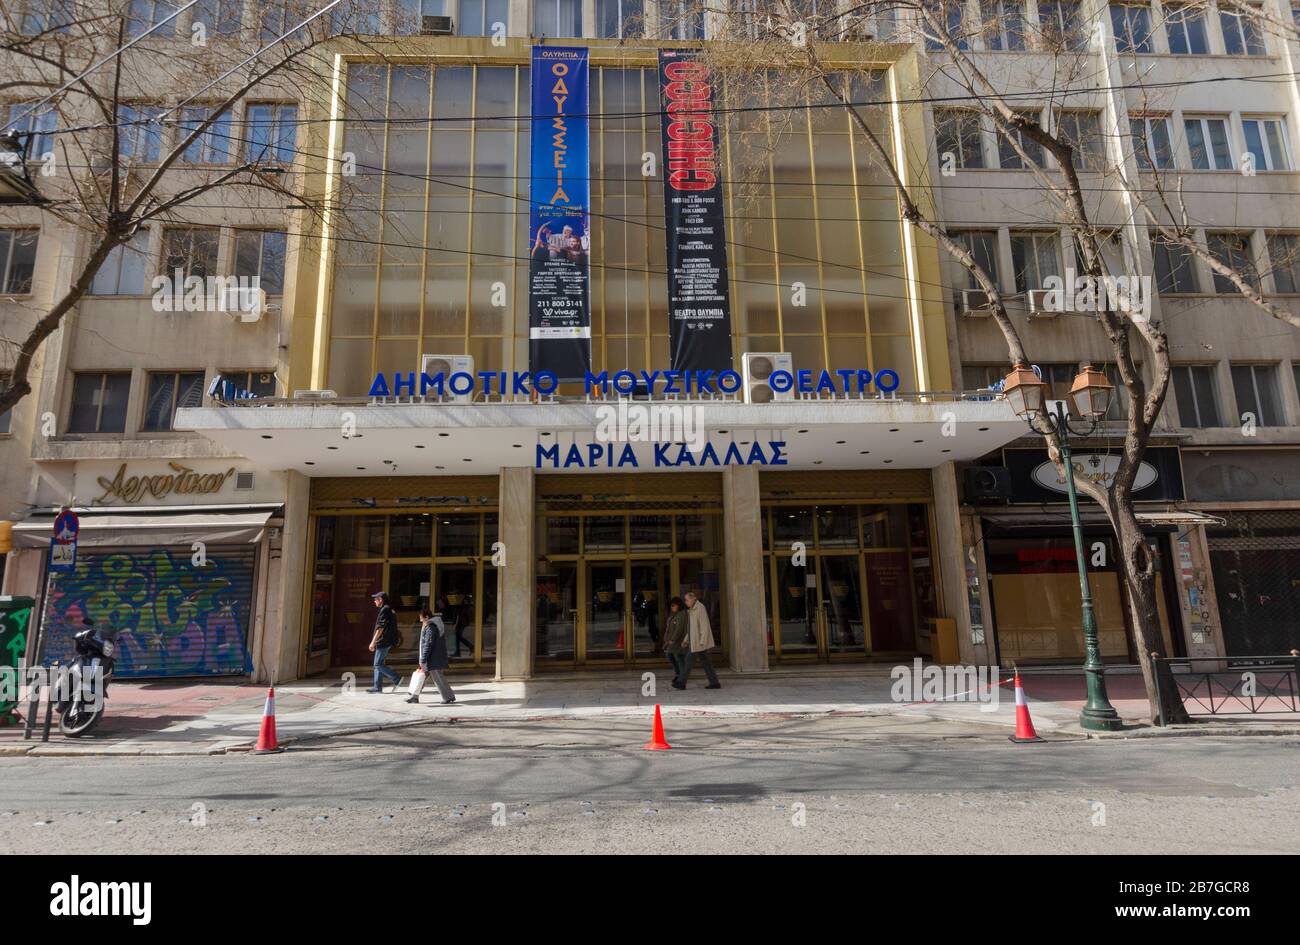 ATENE, GRECIA - 03 Mar 2020 - Vista esterna del Teatro musicale munificiale Olympia Maria Callas in via Akaimia nel centro di Atene Grecia Foto Stock